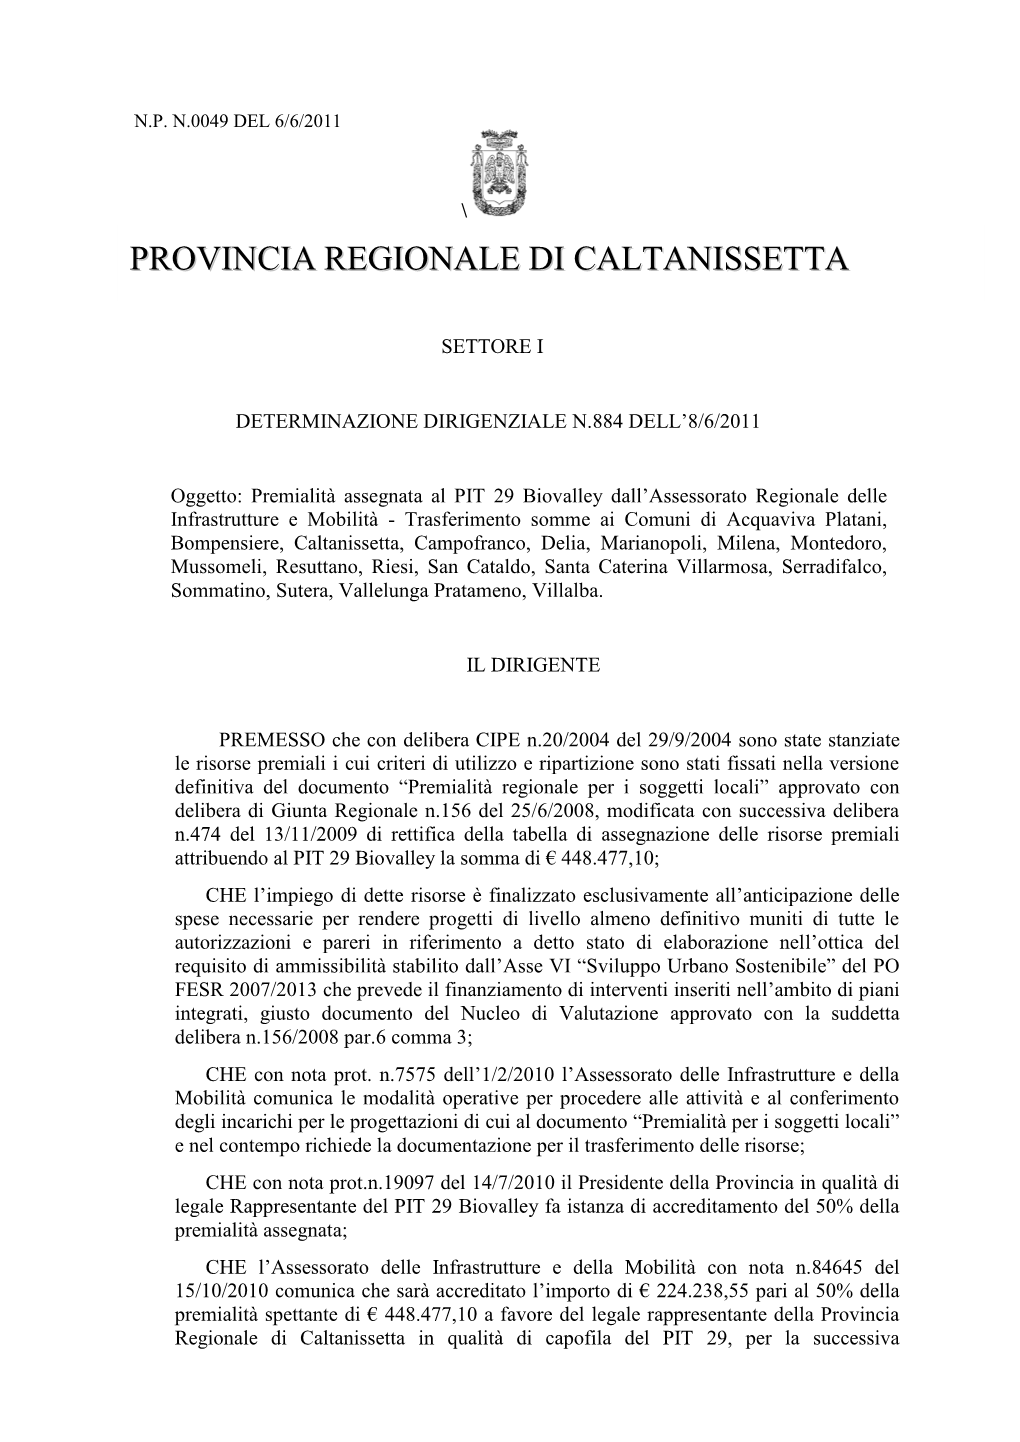 Provincia Regionale Di Caltanissetta